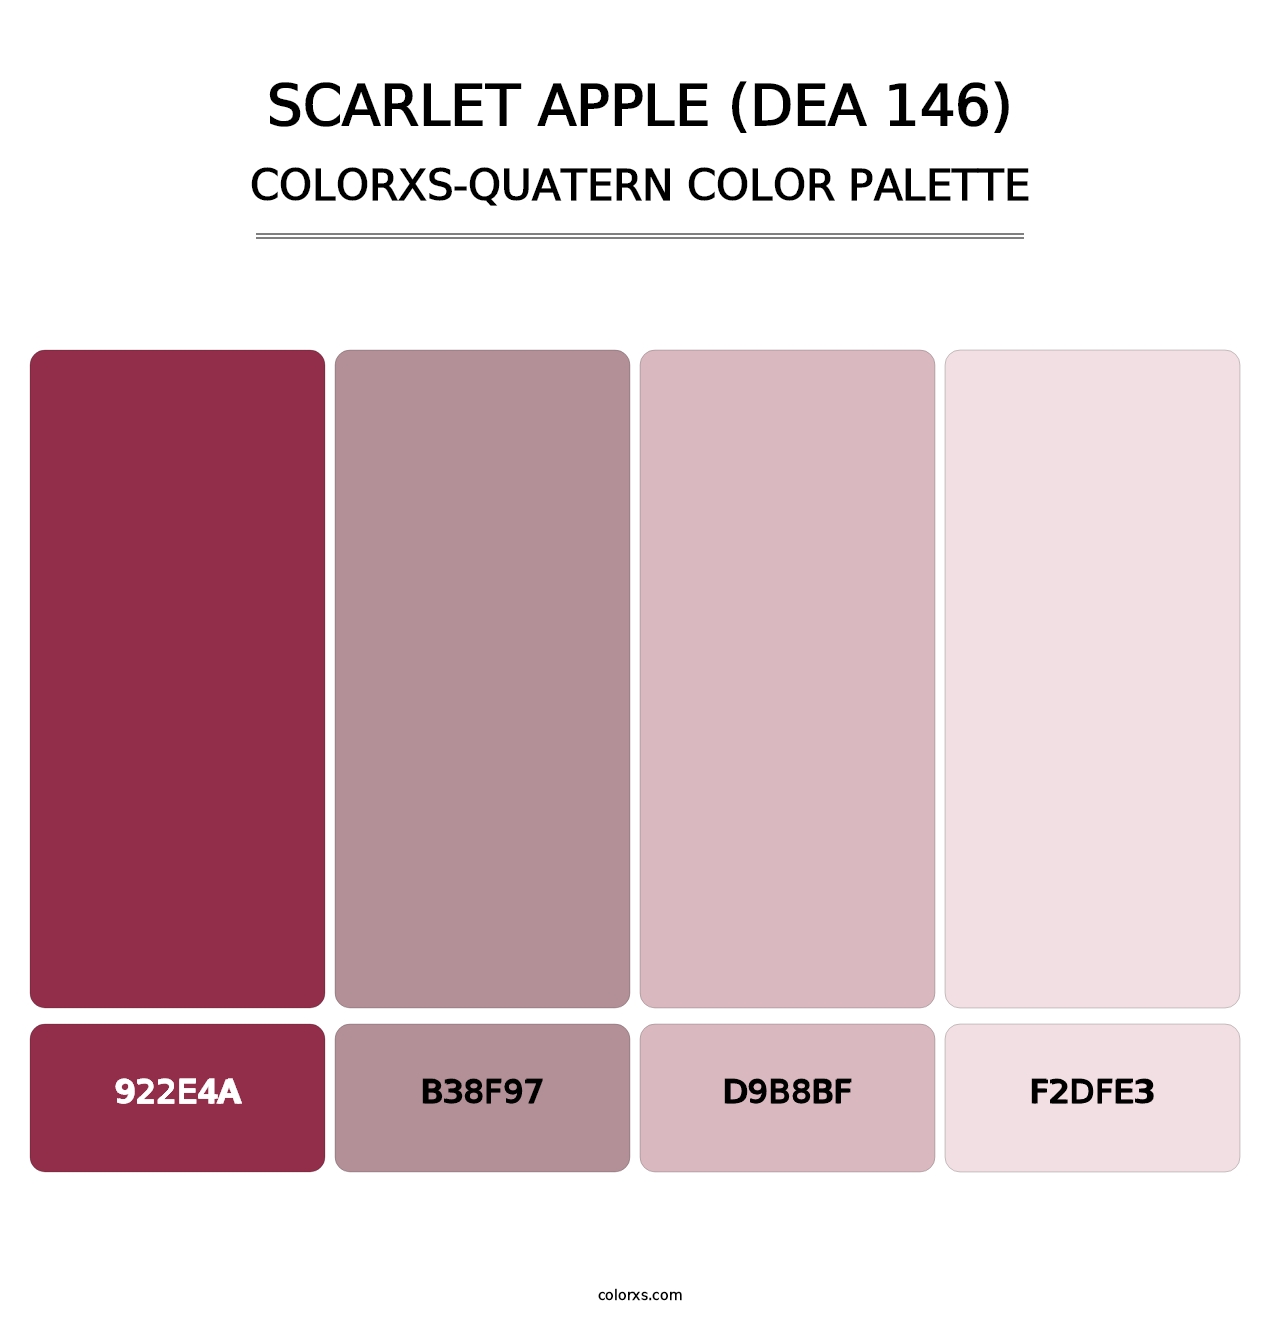 Scarlet Apple (DEA 146) - Colorxs Quatern Palette